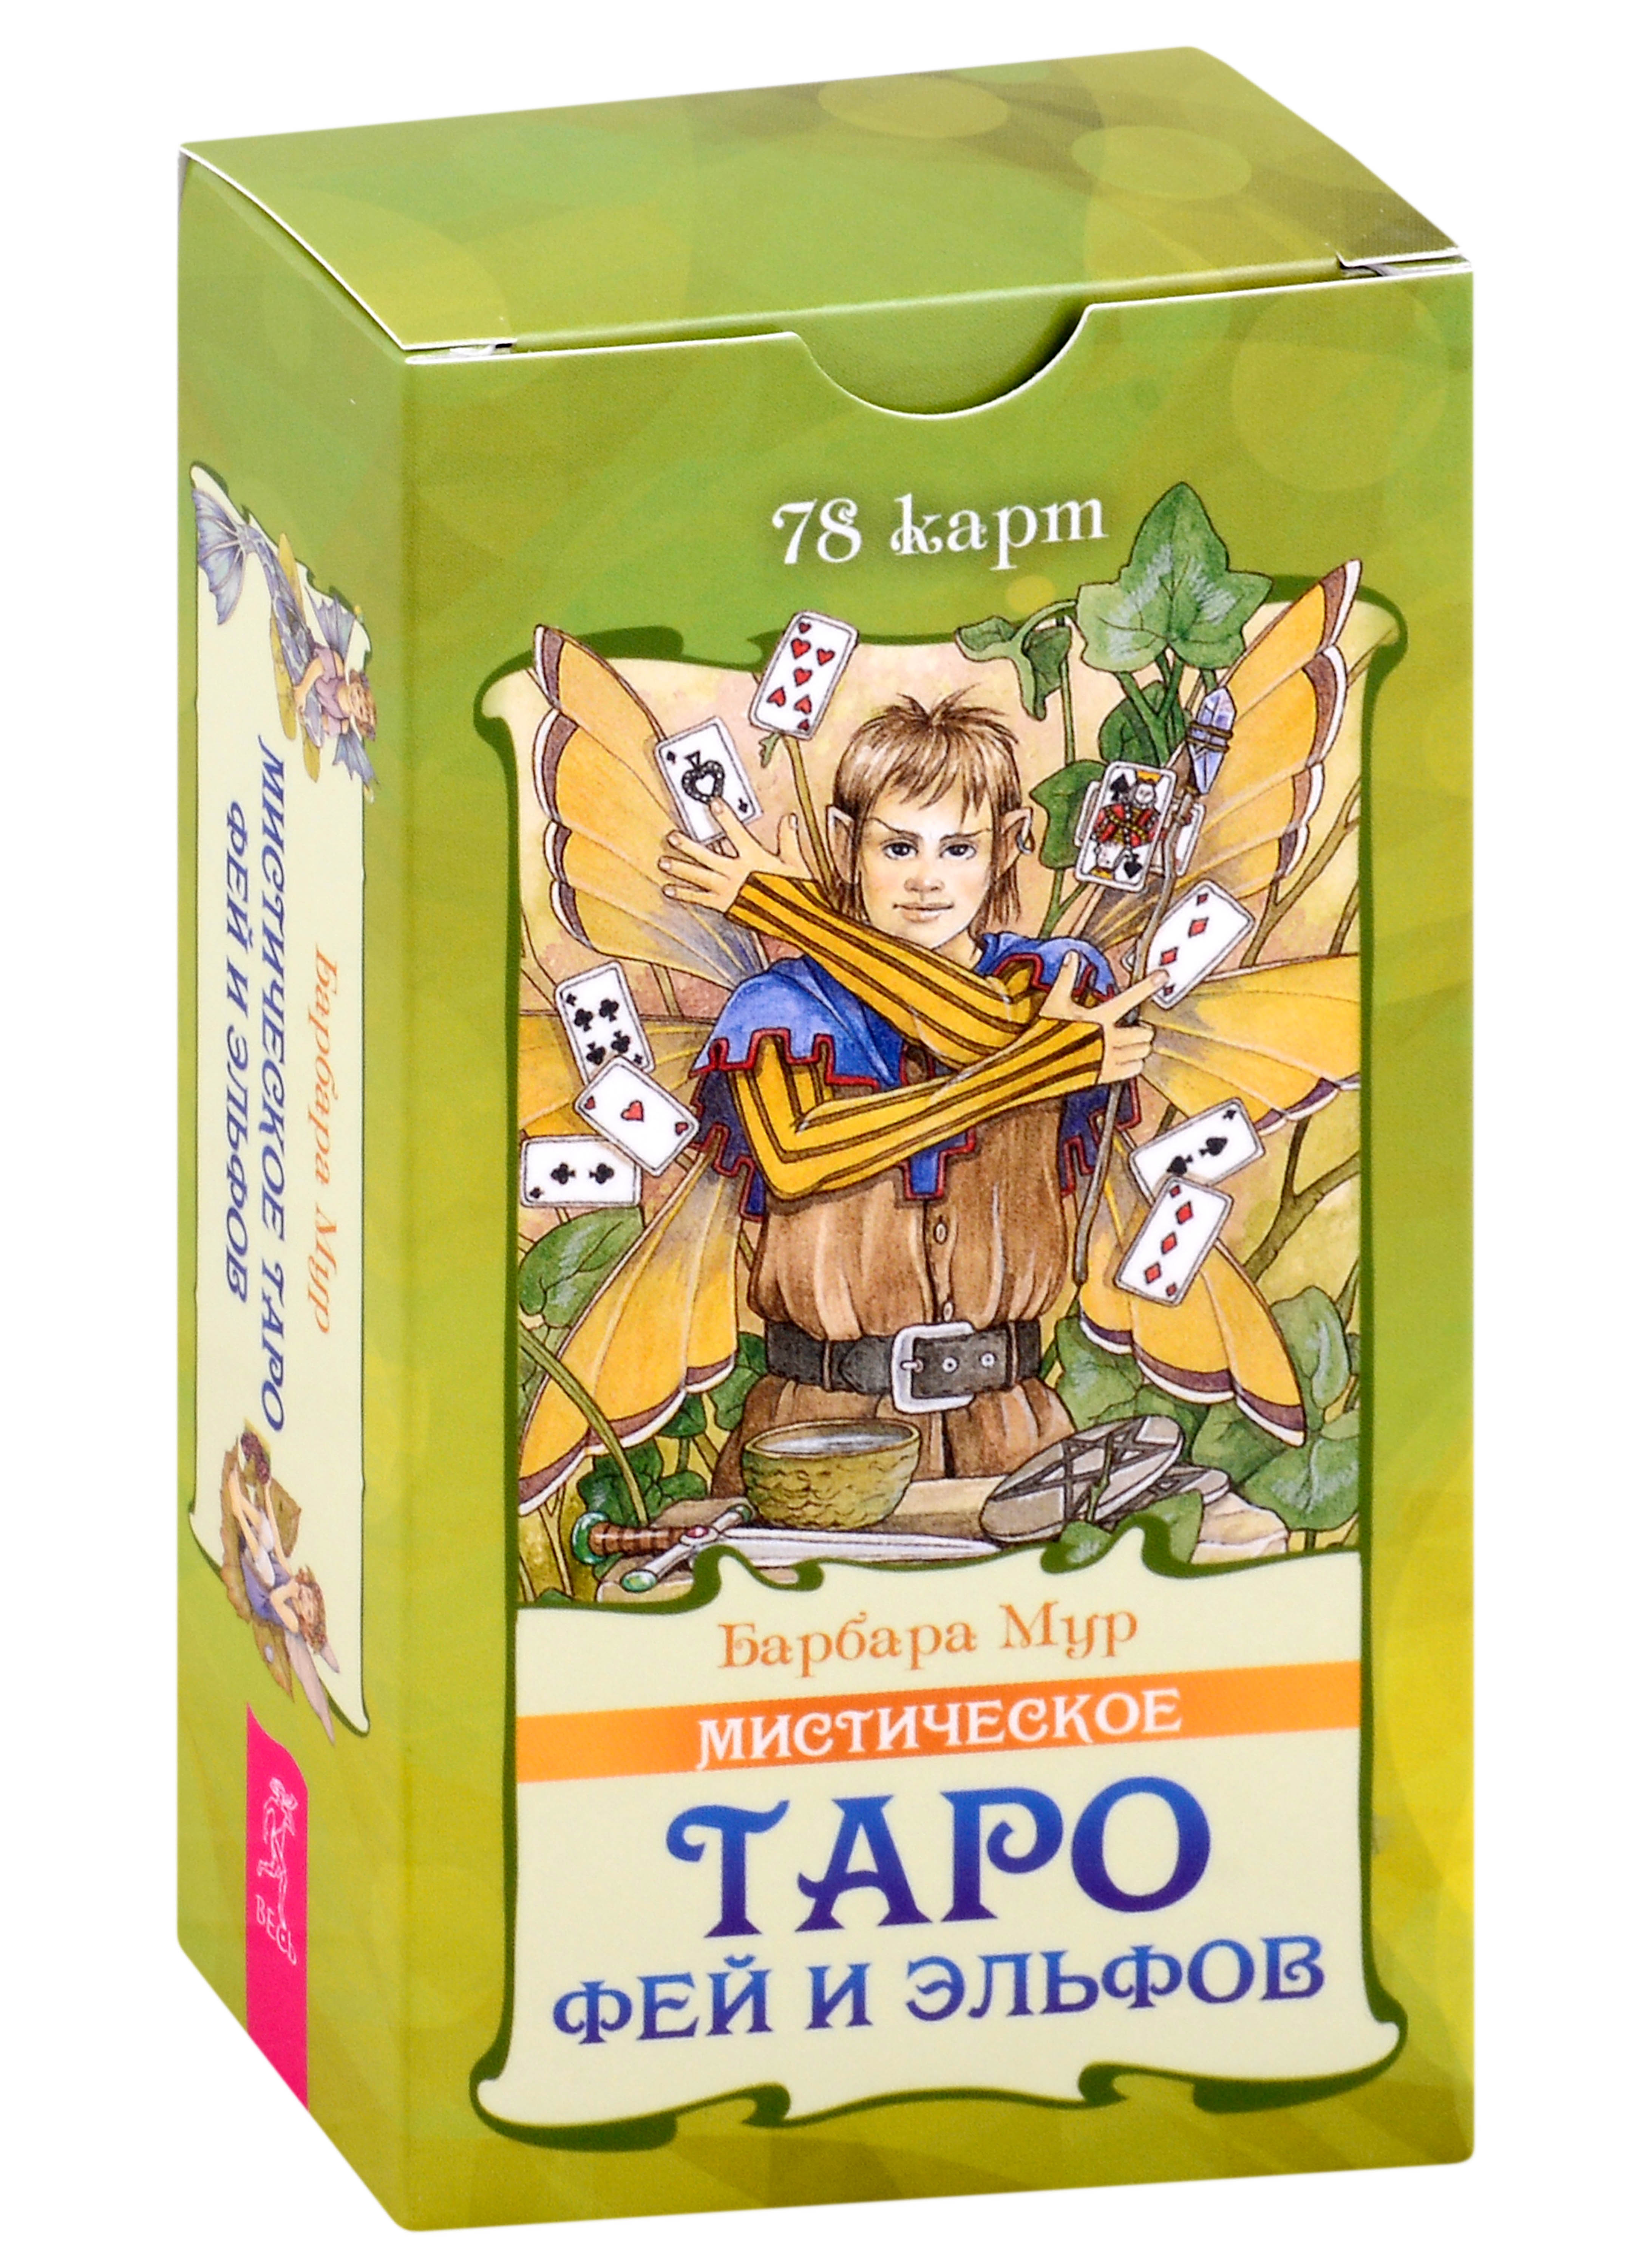 Мур Барбара Мистическое Таро фей и эльфов (78 карт) (5015)